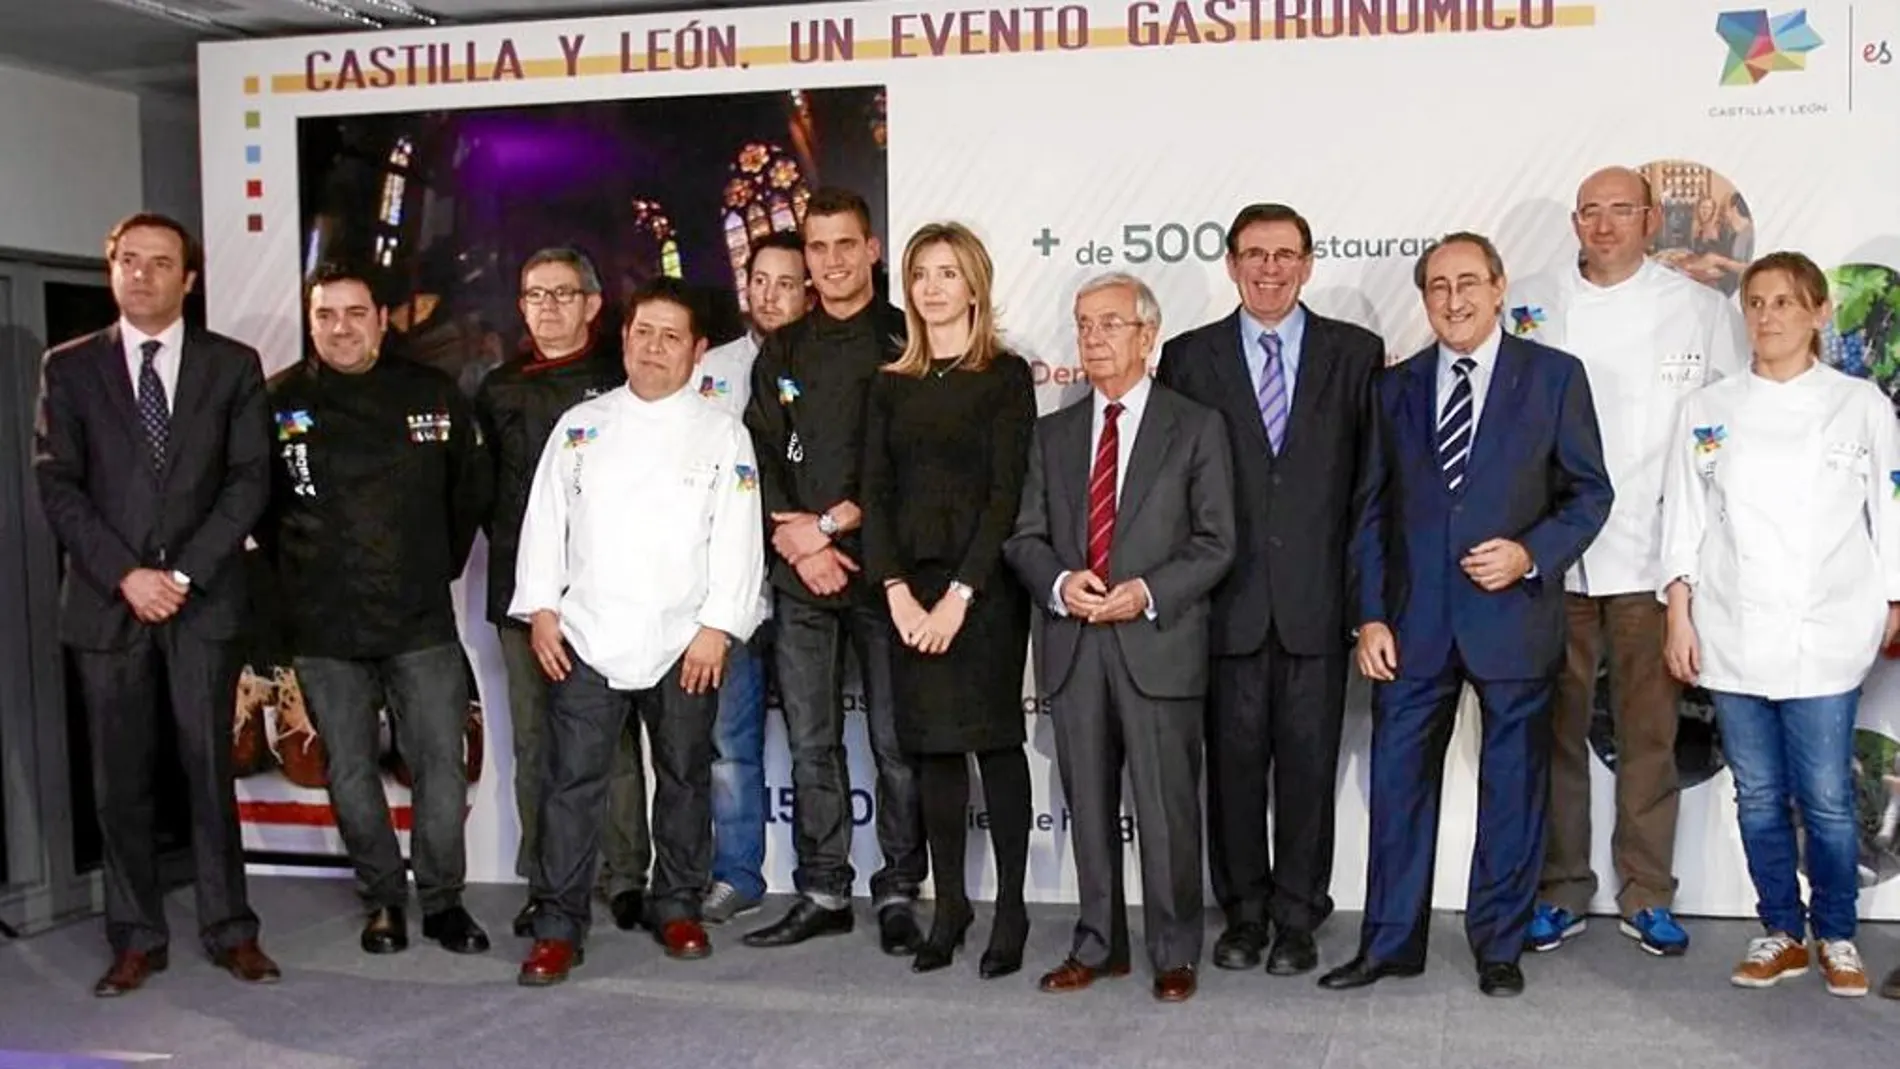 Cultura y gastronomía irán de la mano a lo largo de 2014 en Castilla y León